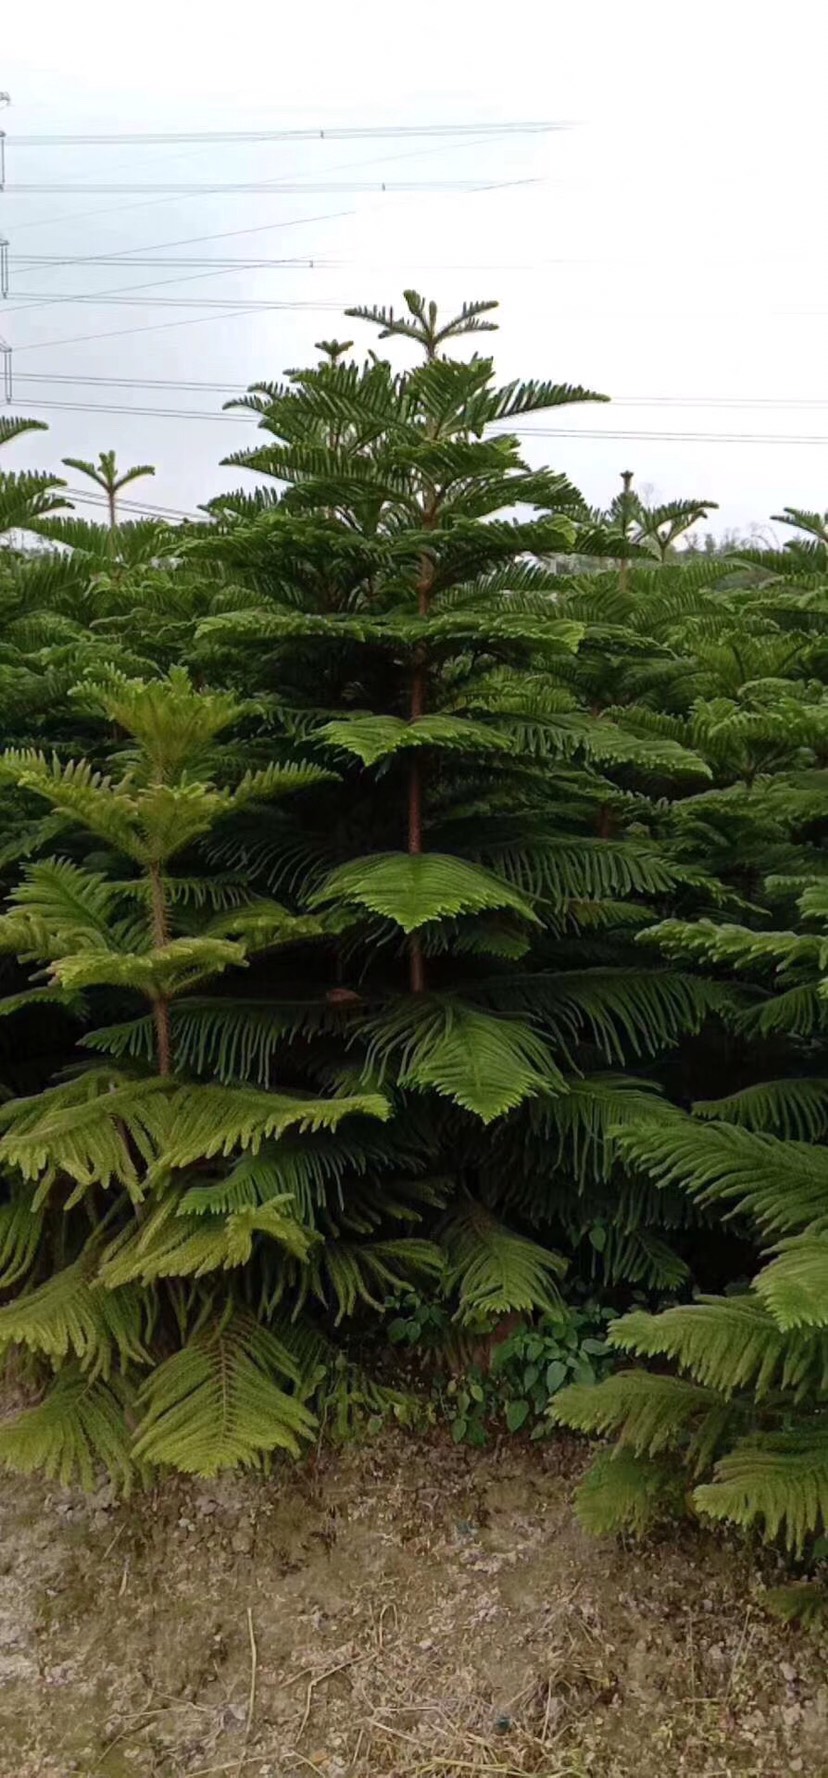 普宁市南洋杉盆栽  南洋杉袋苗2.5-3米高喜光喜暖湿气候 生长较快萌蘖力强